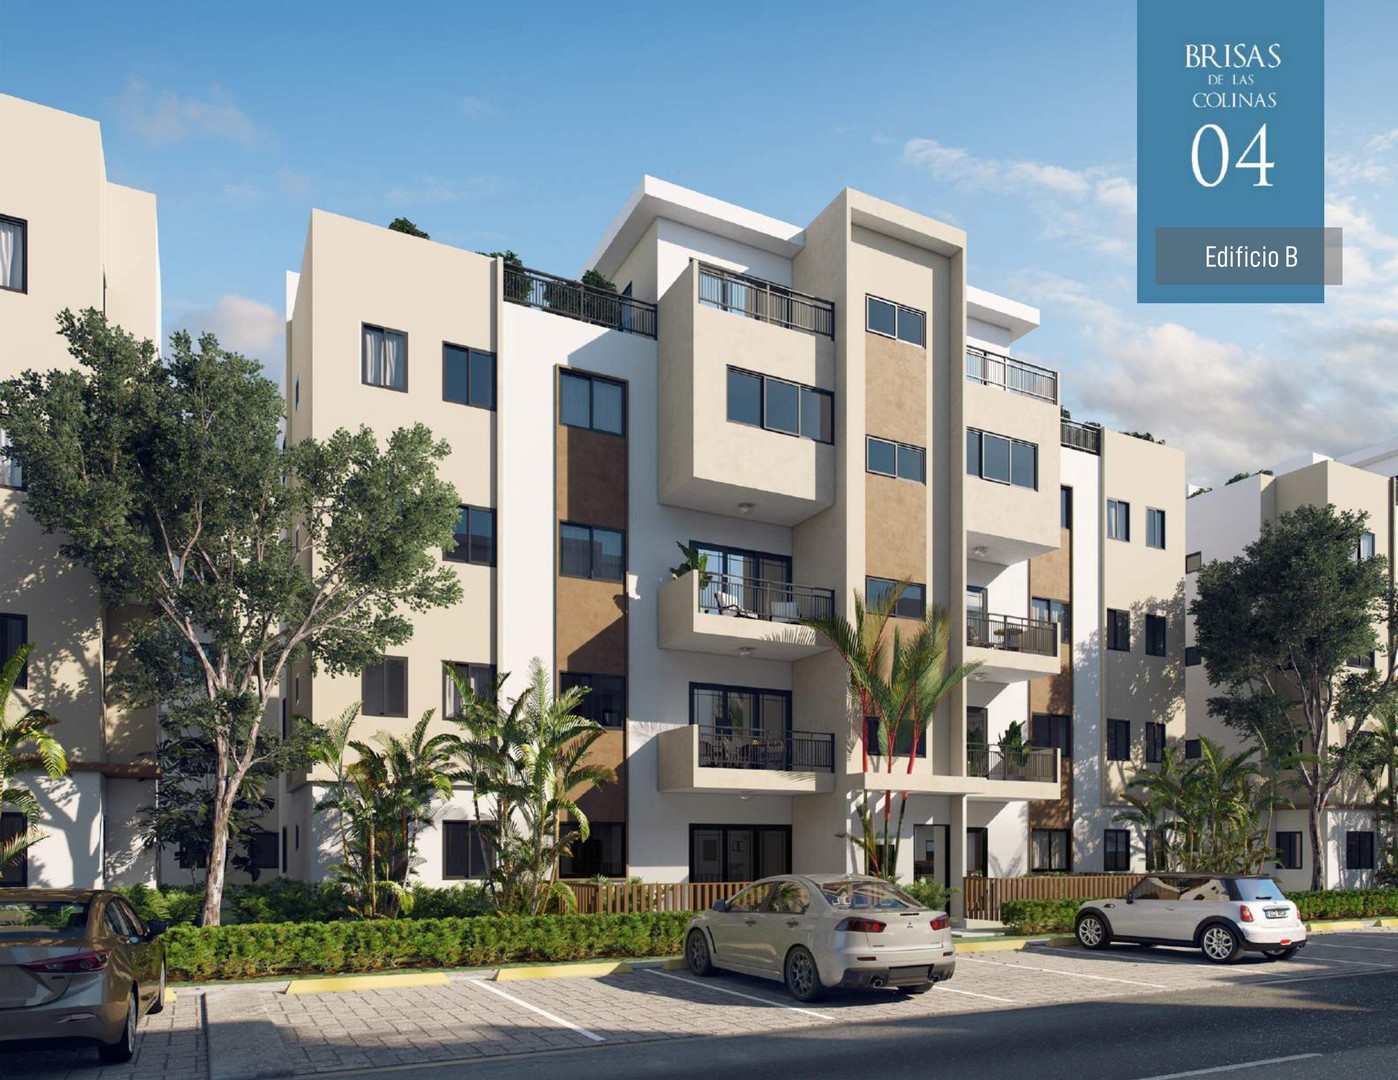 apartamentos - Apartamentos en ventas en el proyecto Brisas de las Colinas 4, Santo Domingo 0